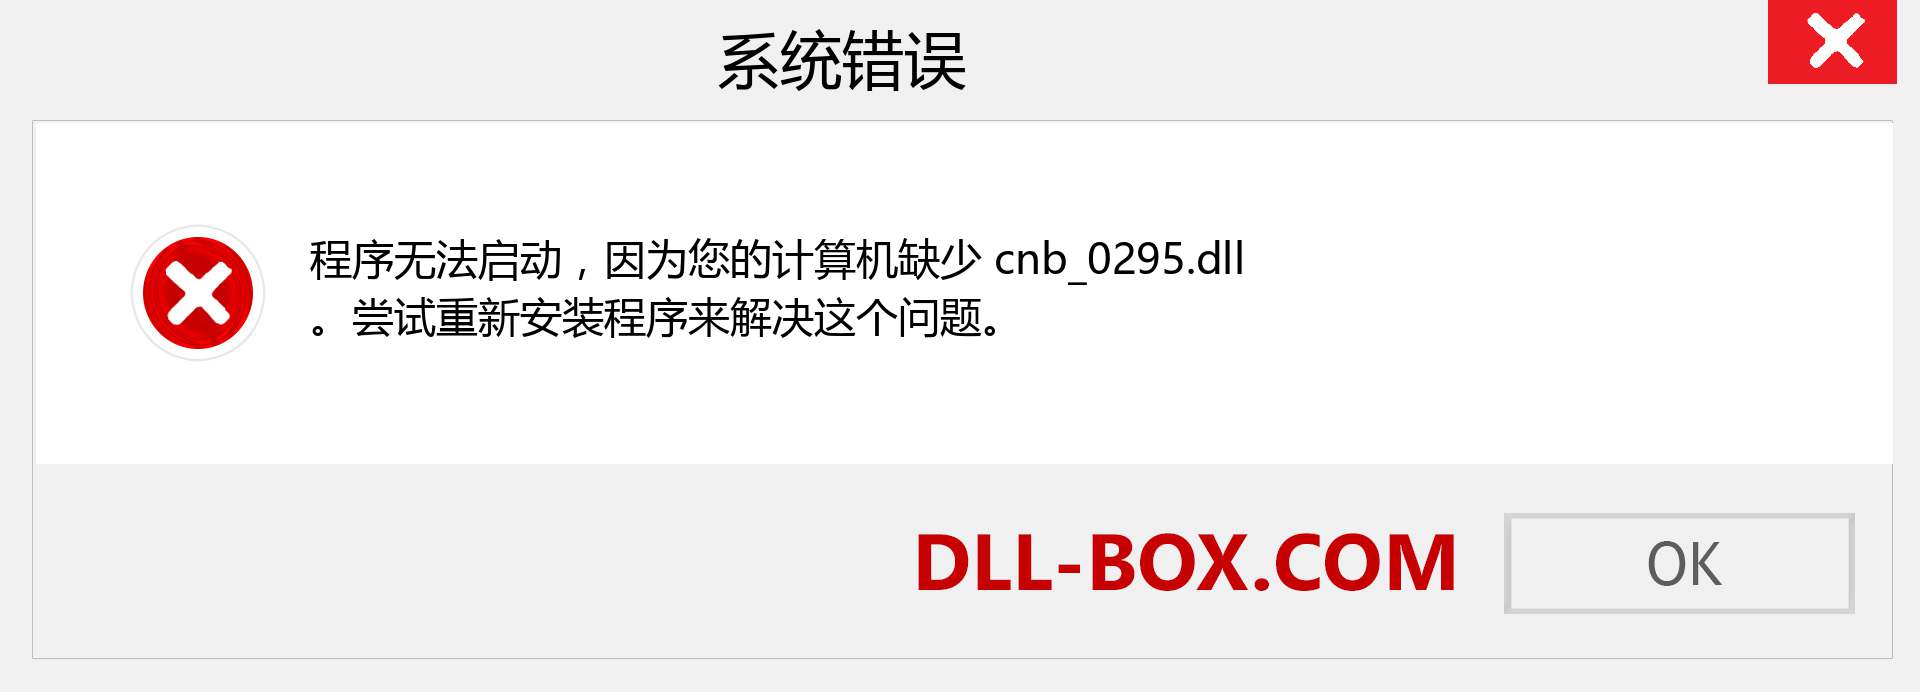 cnb_0295.dll 文件丢失？。 适用于 Windows 7、8、10 的下载 - 修复 Windows、照片、图像上的 cnb_0295 dll 丢失错误